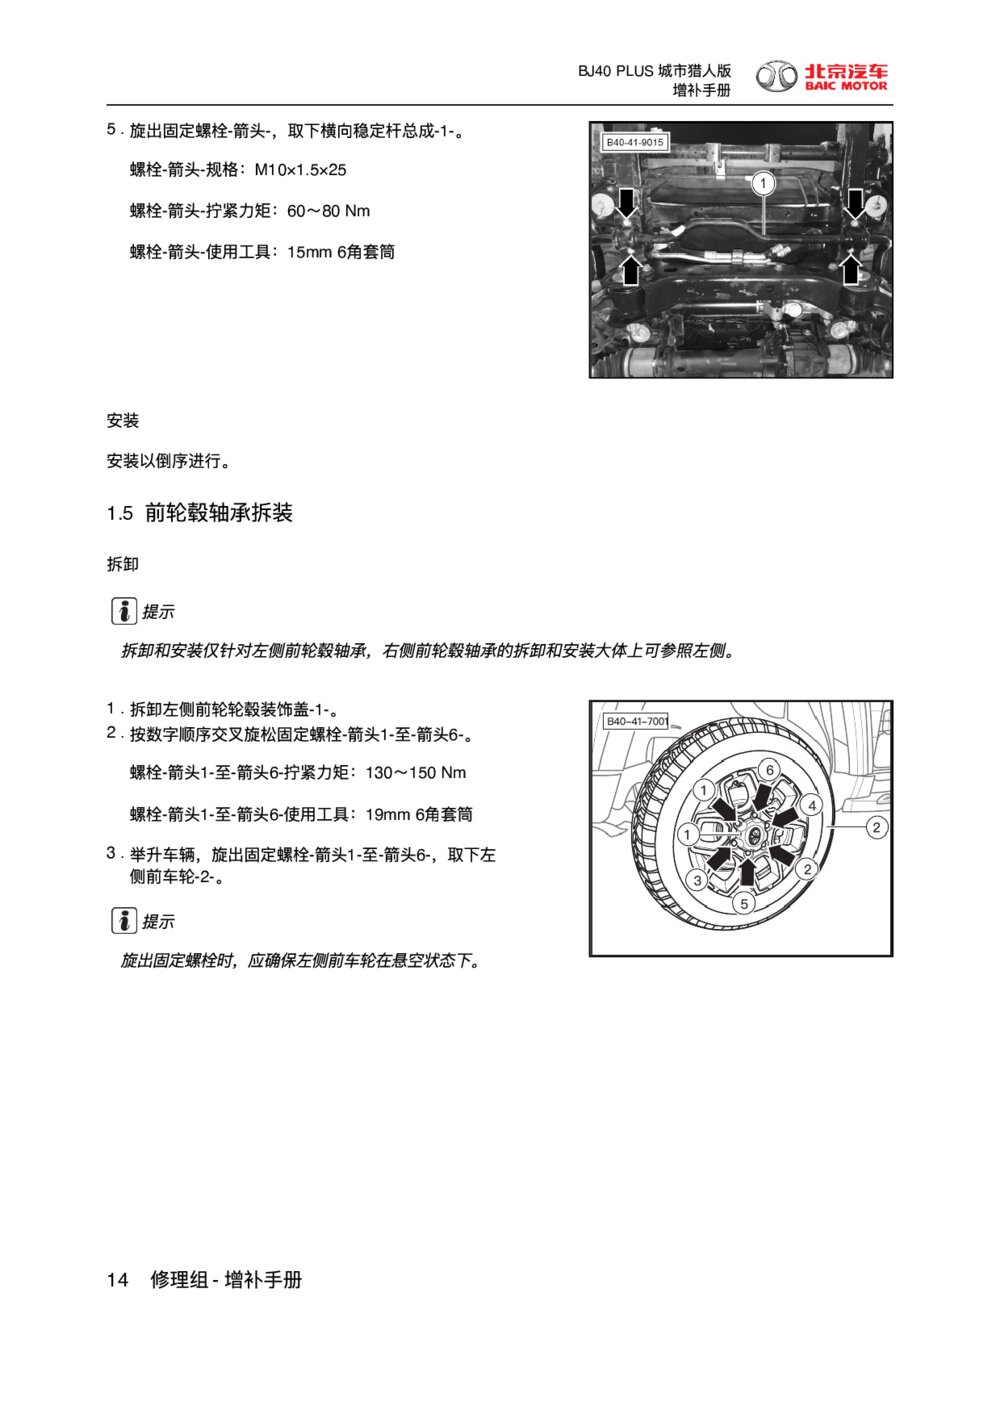 2018款北京BJ40 PLUS底盘前轮毂轴承拆装1